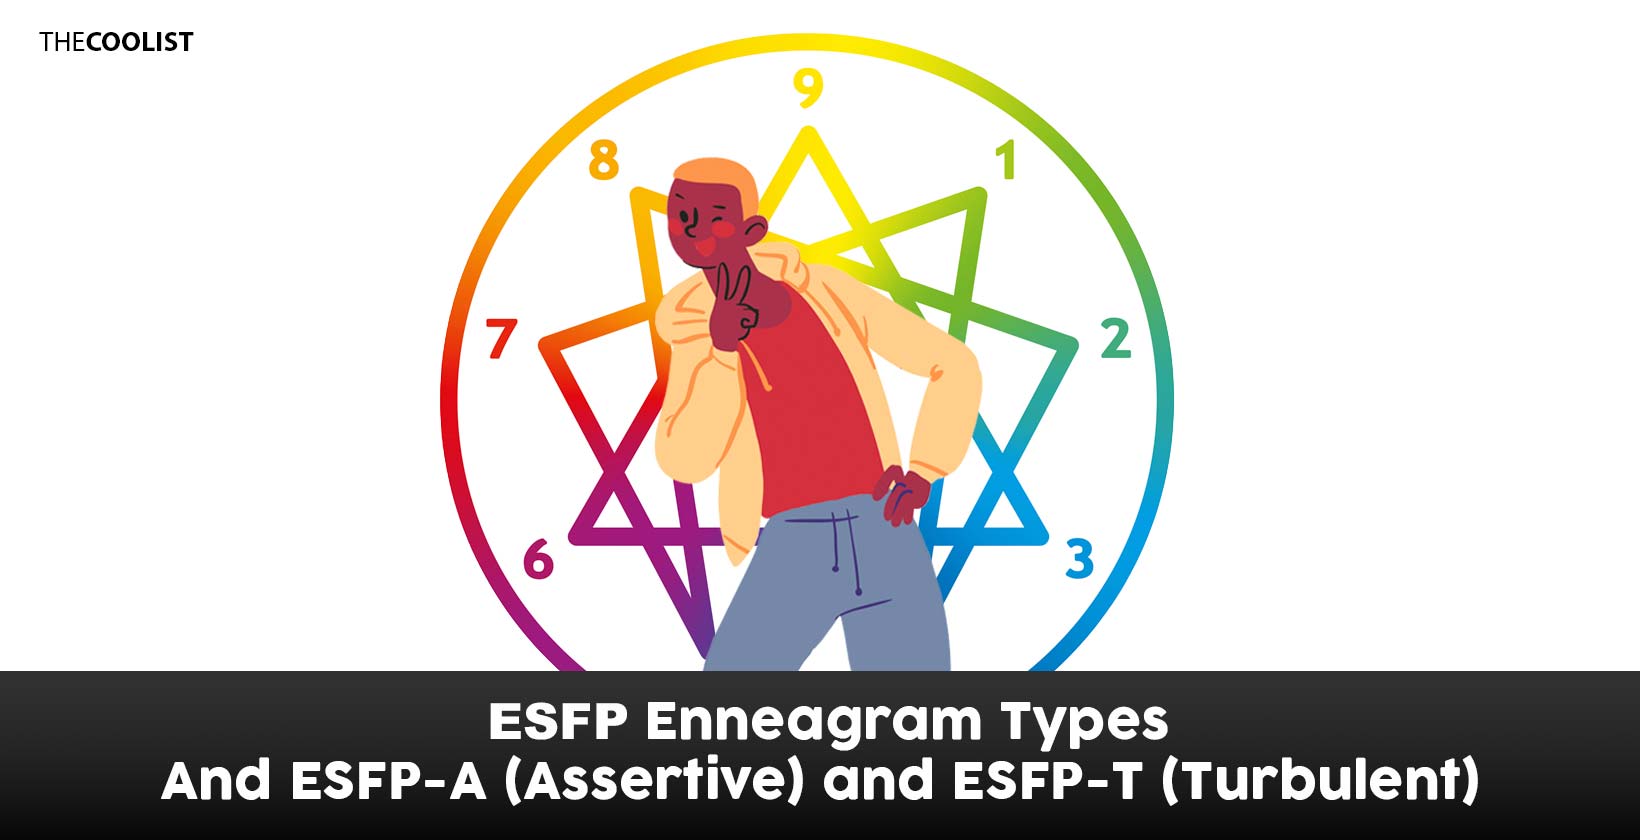 ESFP subtypes